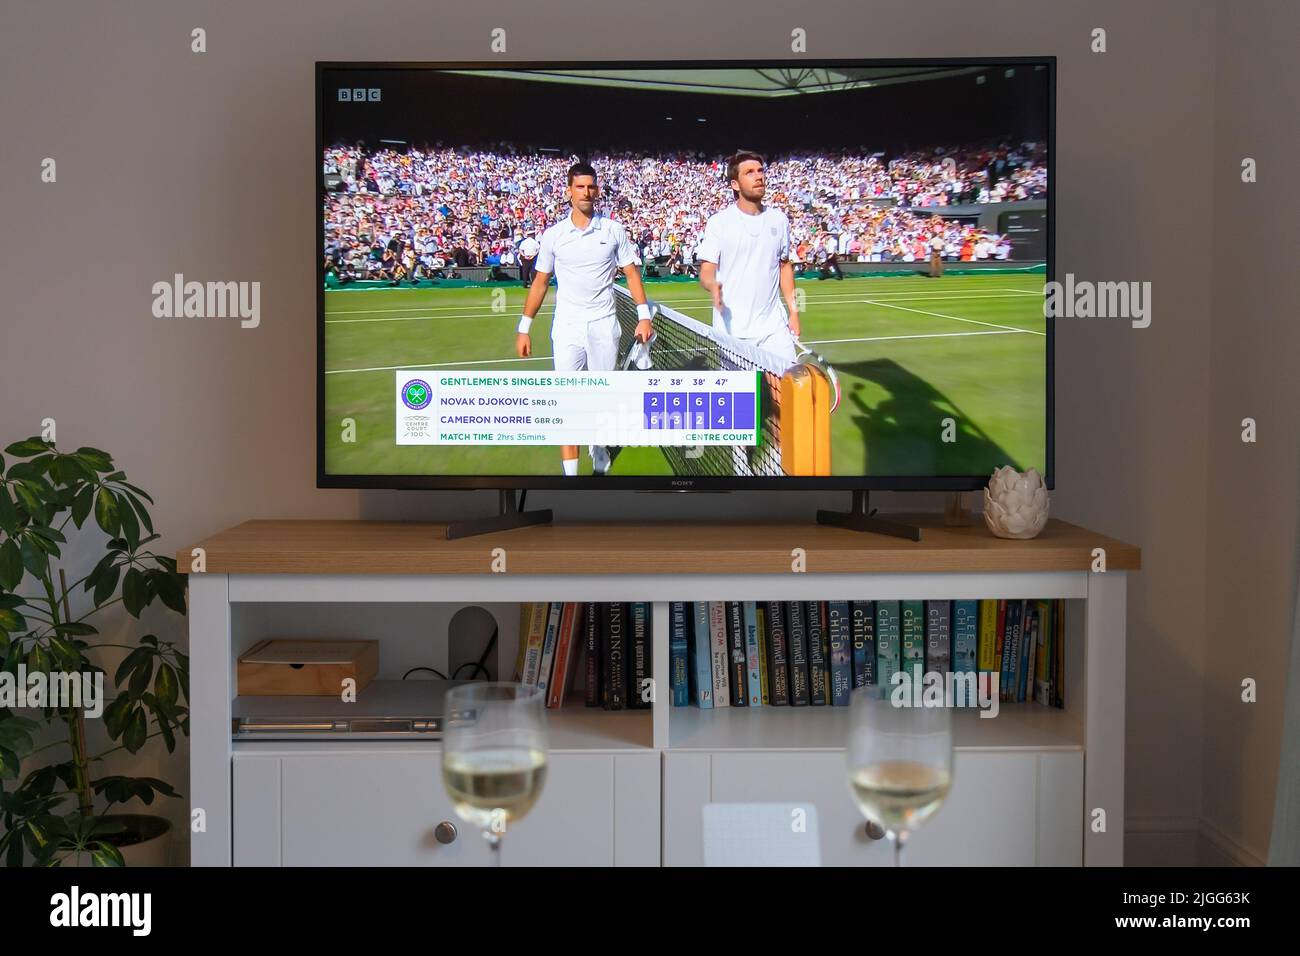 Cameron Norrie y Novak Djokovic en la red y el final de la final de tenis masculino de Wimbledon 2022 el 8th de julio de 2022 en un televisor en un salón. REINO UNIDO Foto de stock